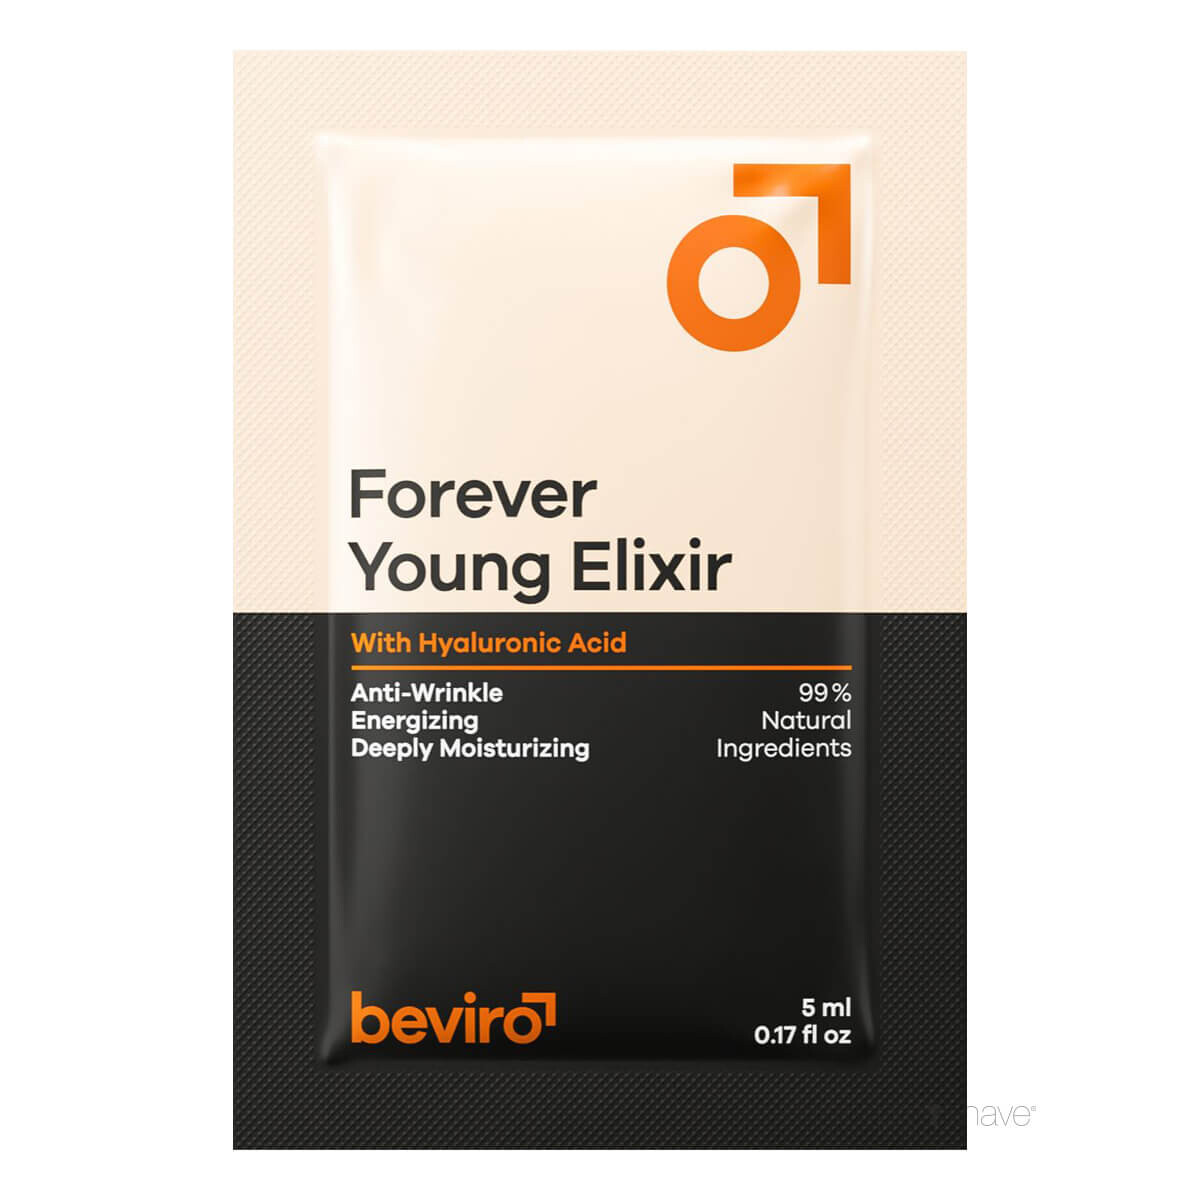 Billede af Beviro Forever Young Elixir, Sample, 5 ml.